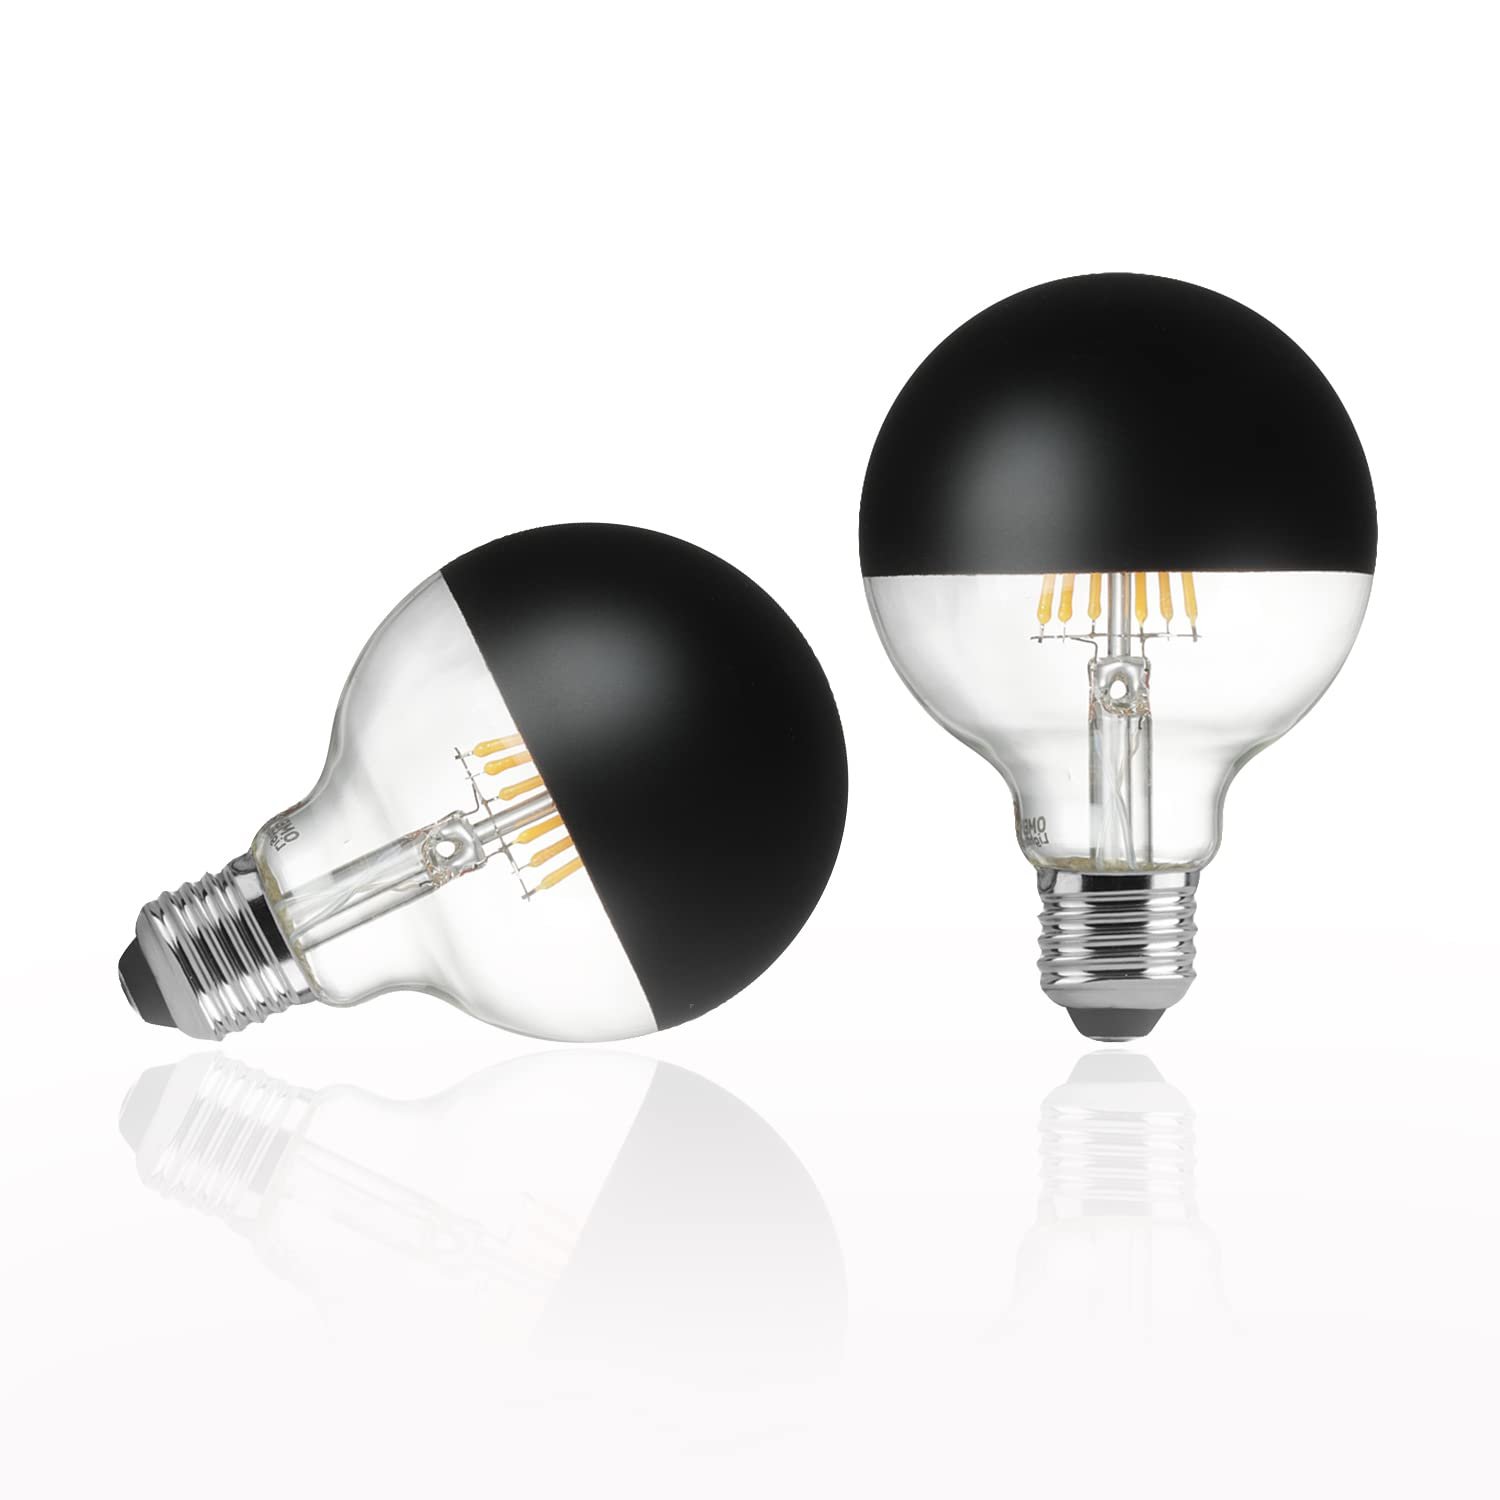 Globe Light Bulbs,G25/G80 Half Black E26 Dimmable LED Light Bulb 60 watt Equivalent, 2700k Soft White Incandescent Light Bulbs for Bathroom,Vanitym,Night Light,Make Up,2 pack Decorative Light Bulb